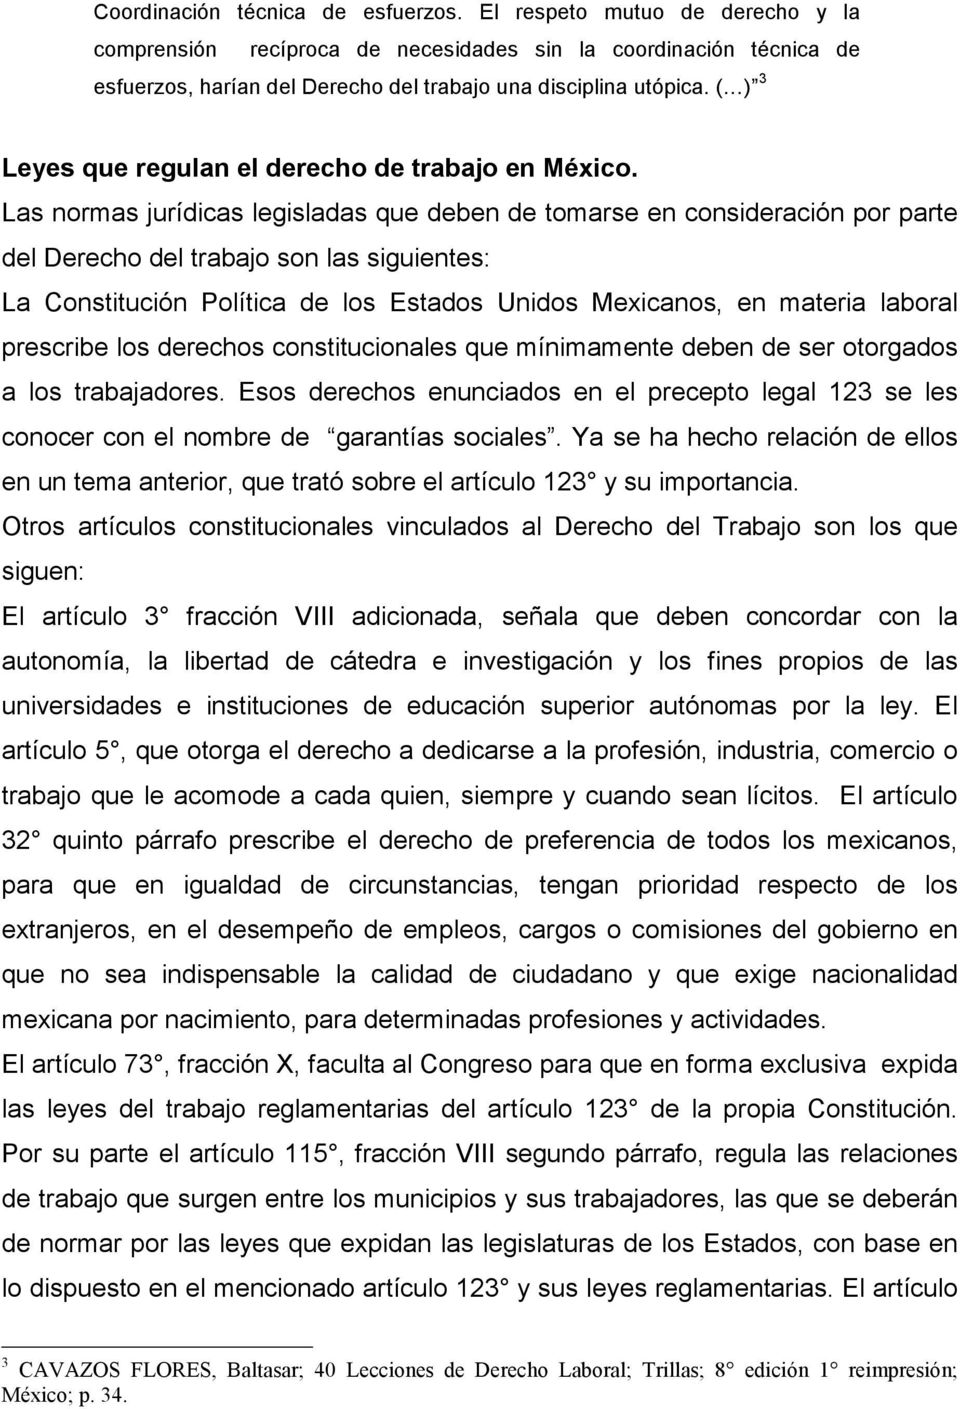 ( ) 3 Leyes que regulan el derecho de trabajo en México.